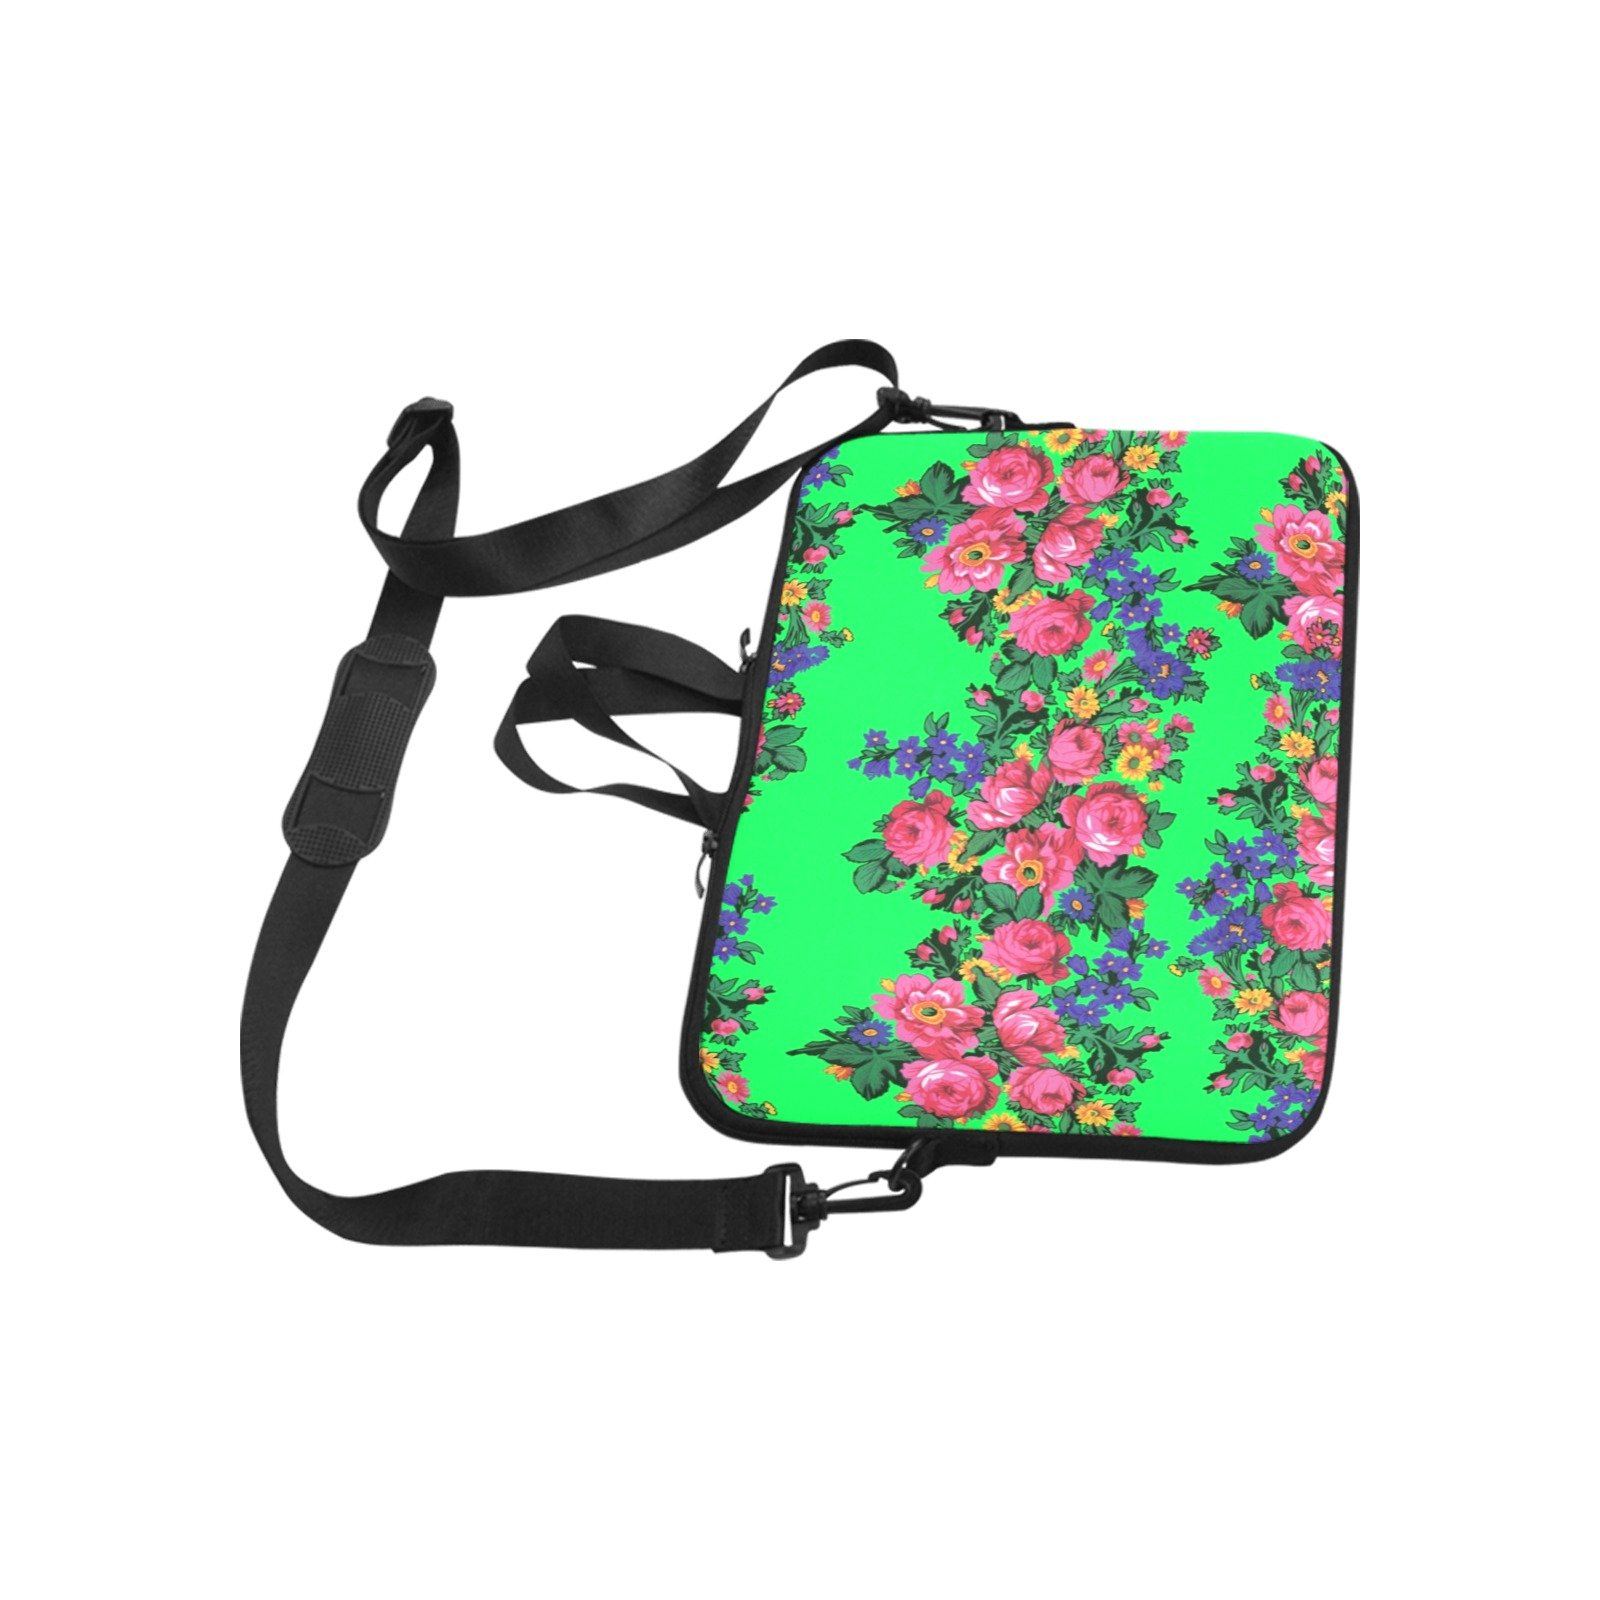 Kokum's Revenge Green Laptop Handbags 10" bag e-joyer 